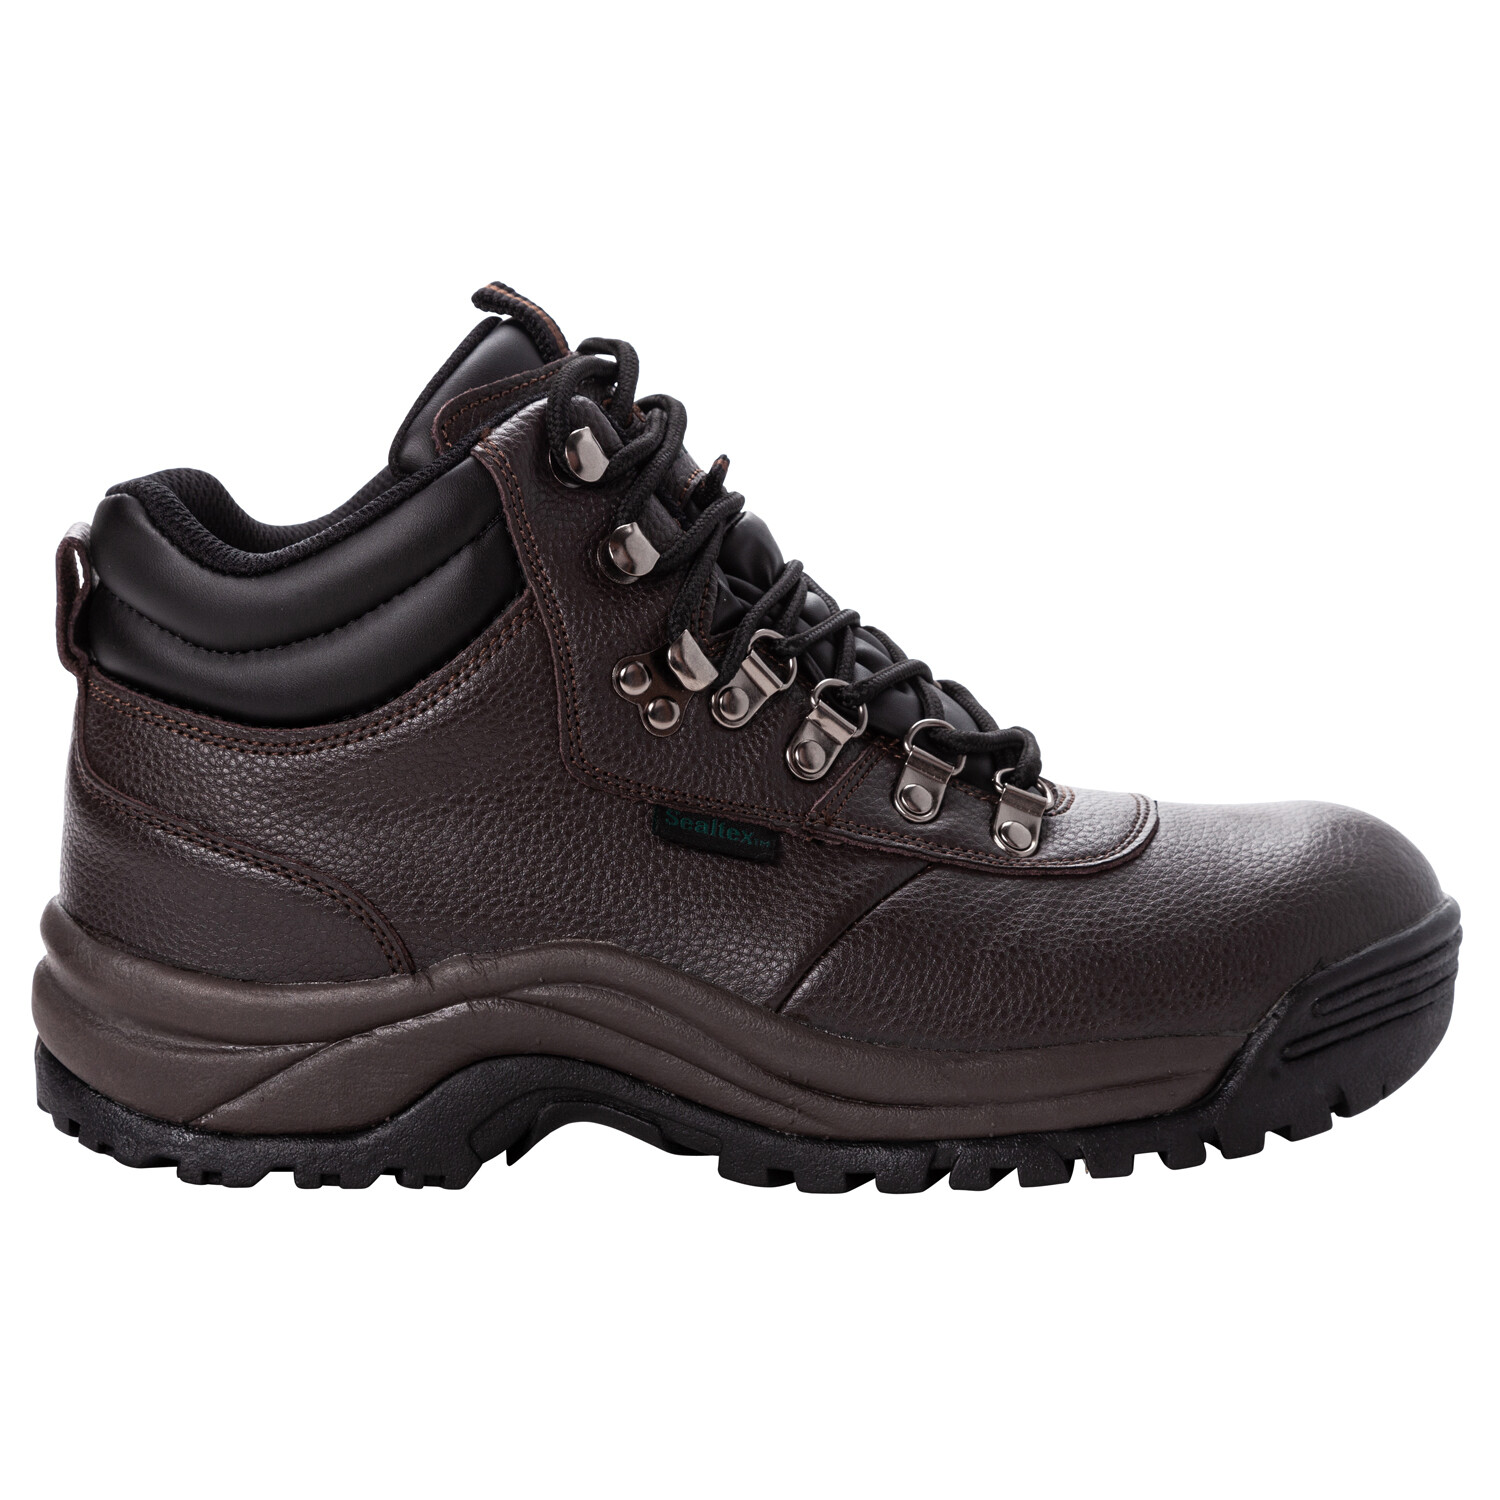 Men's Propet Composite Toe Safety Boot Shield Walker MBU002L BRONCO BROWN